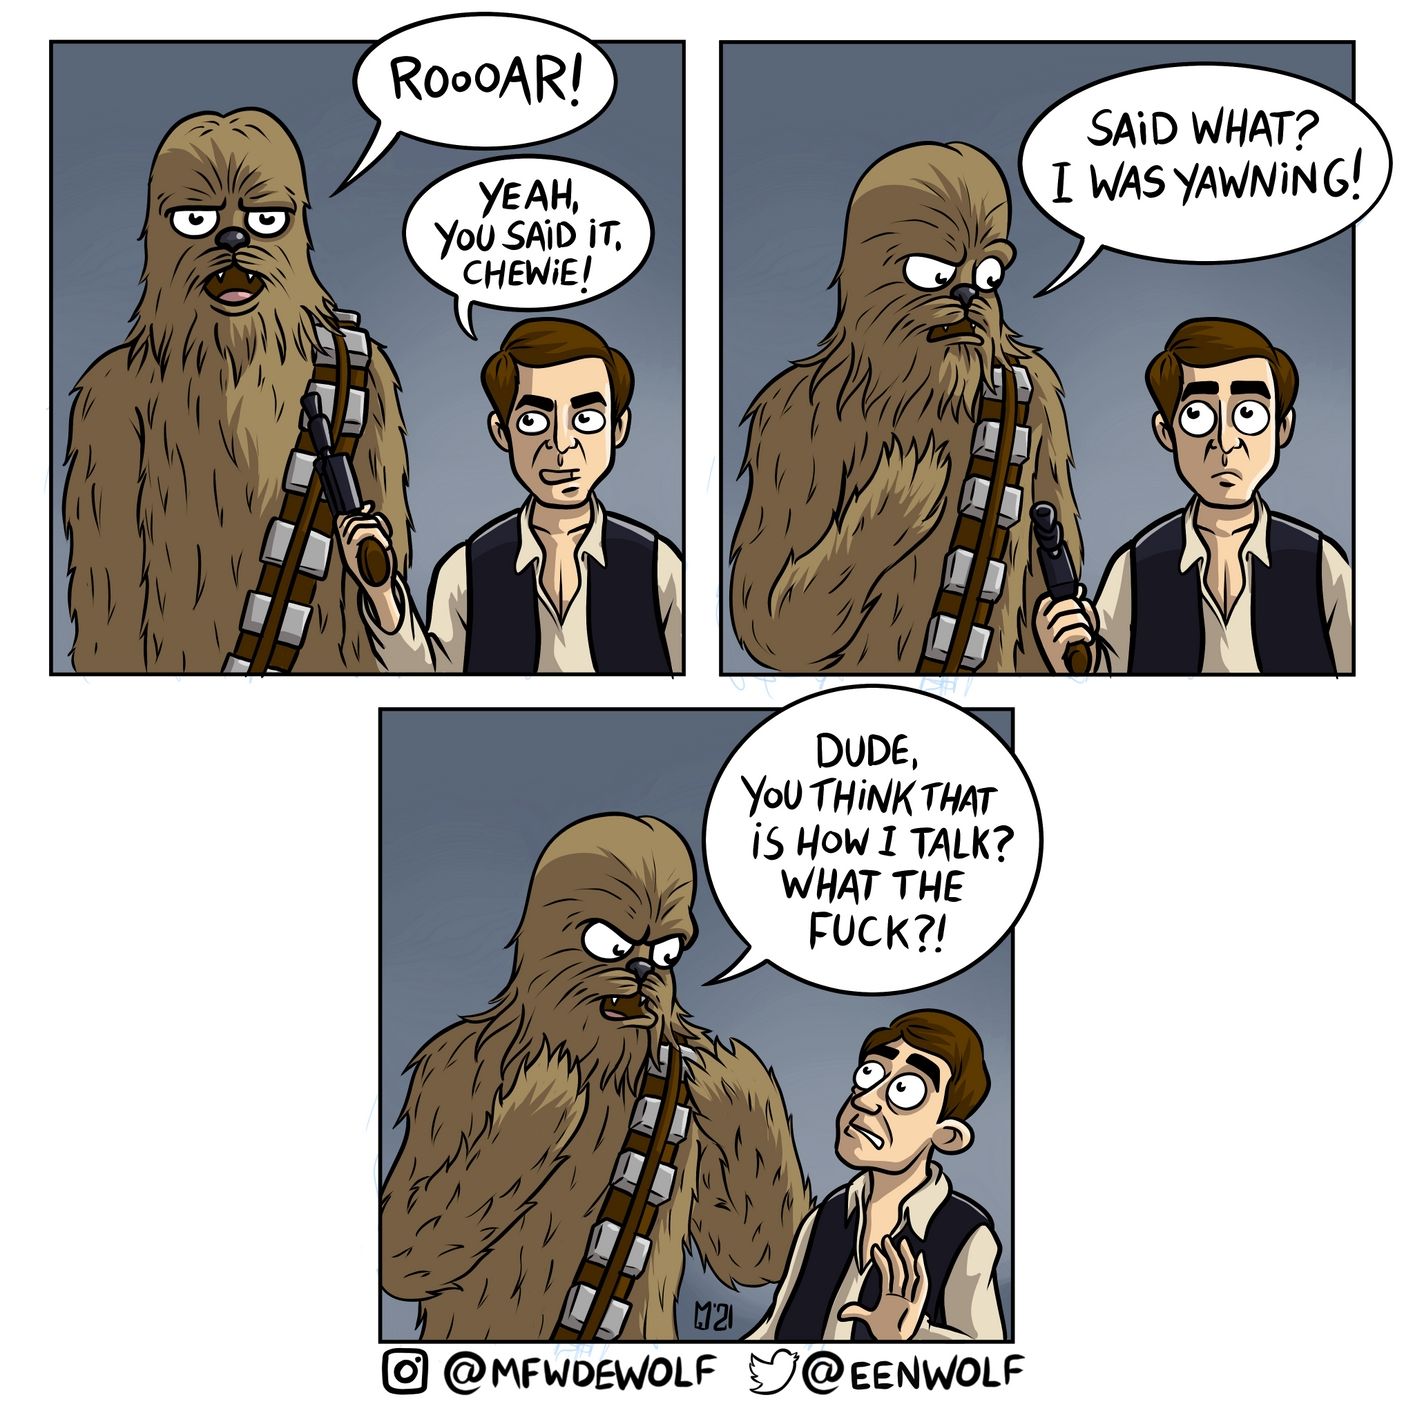 You said it, Chewie!